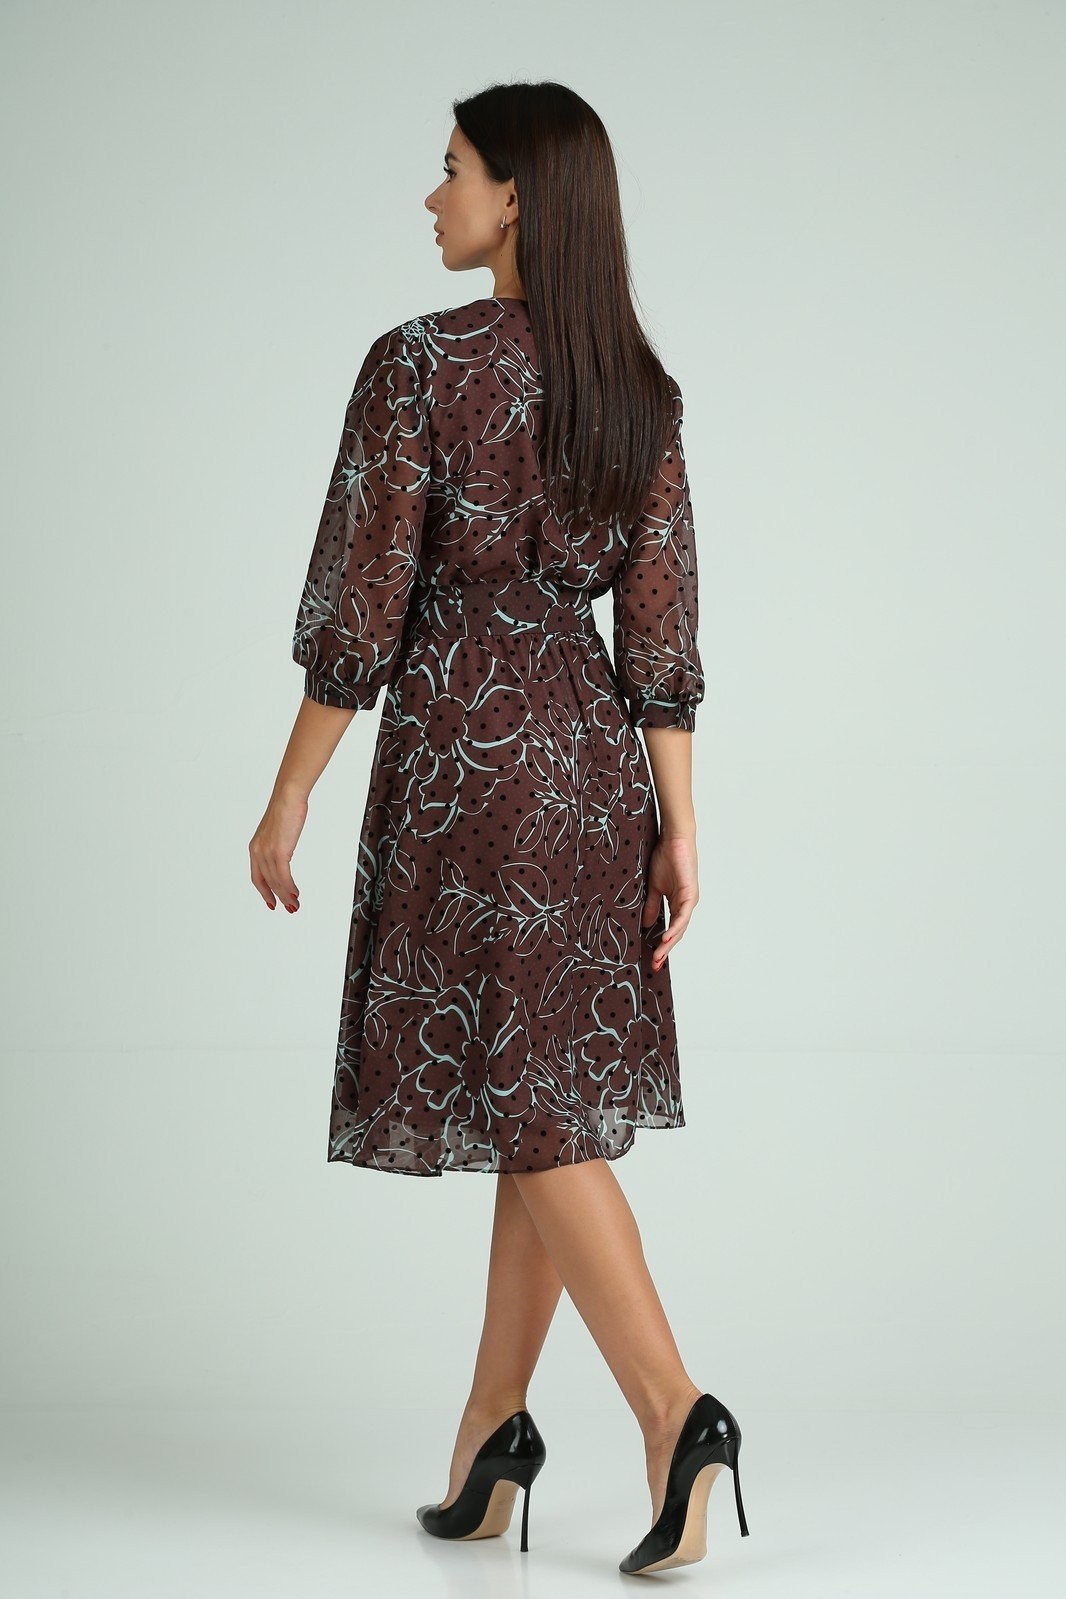 Платье Мода-Версаль 2318 коричневый